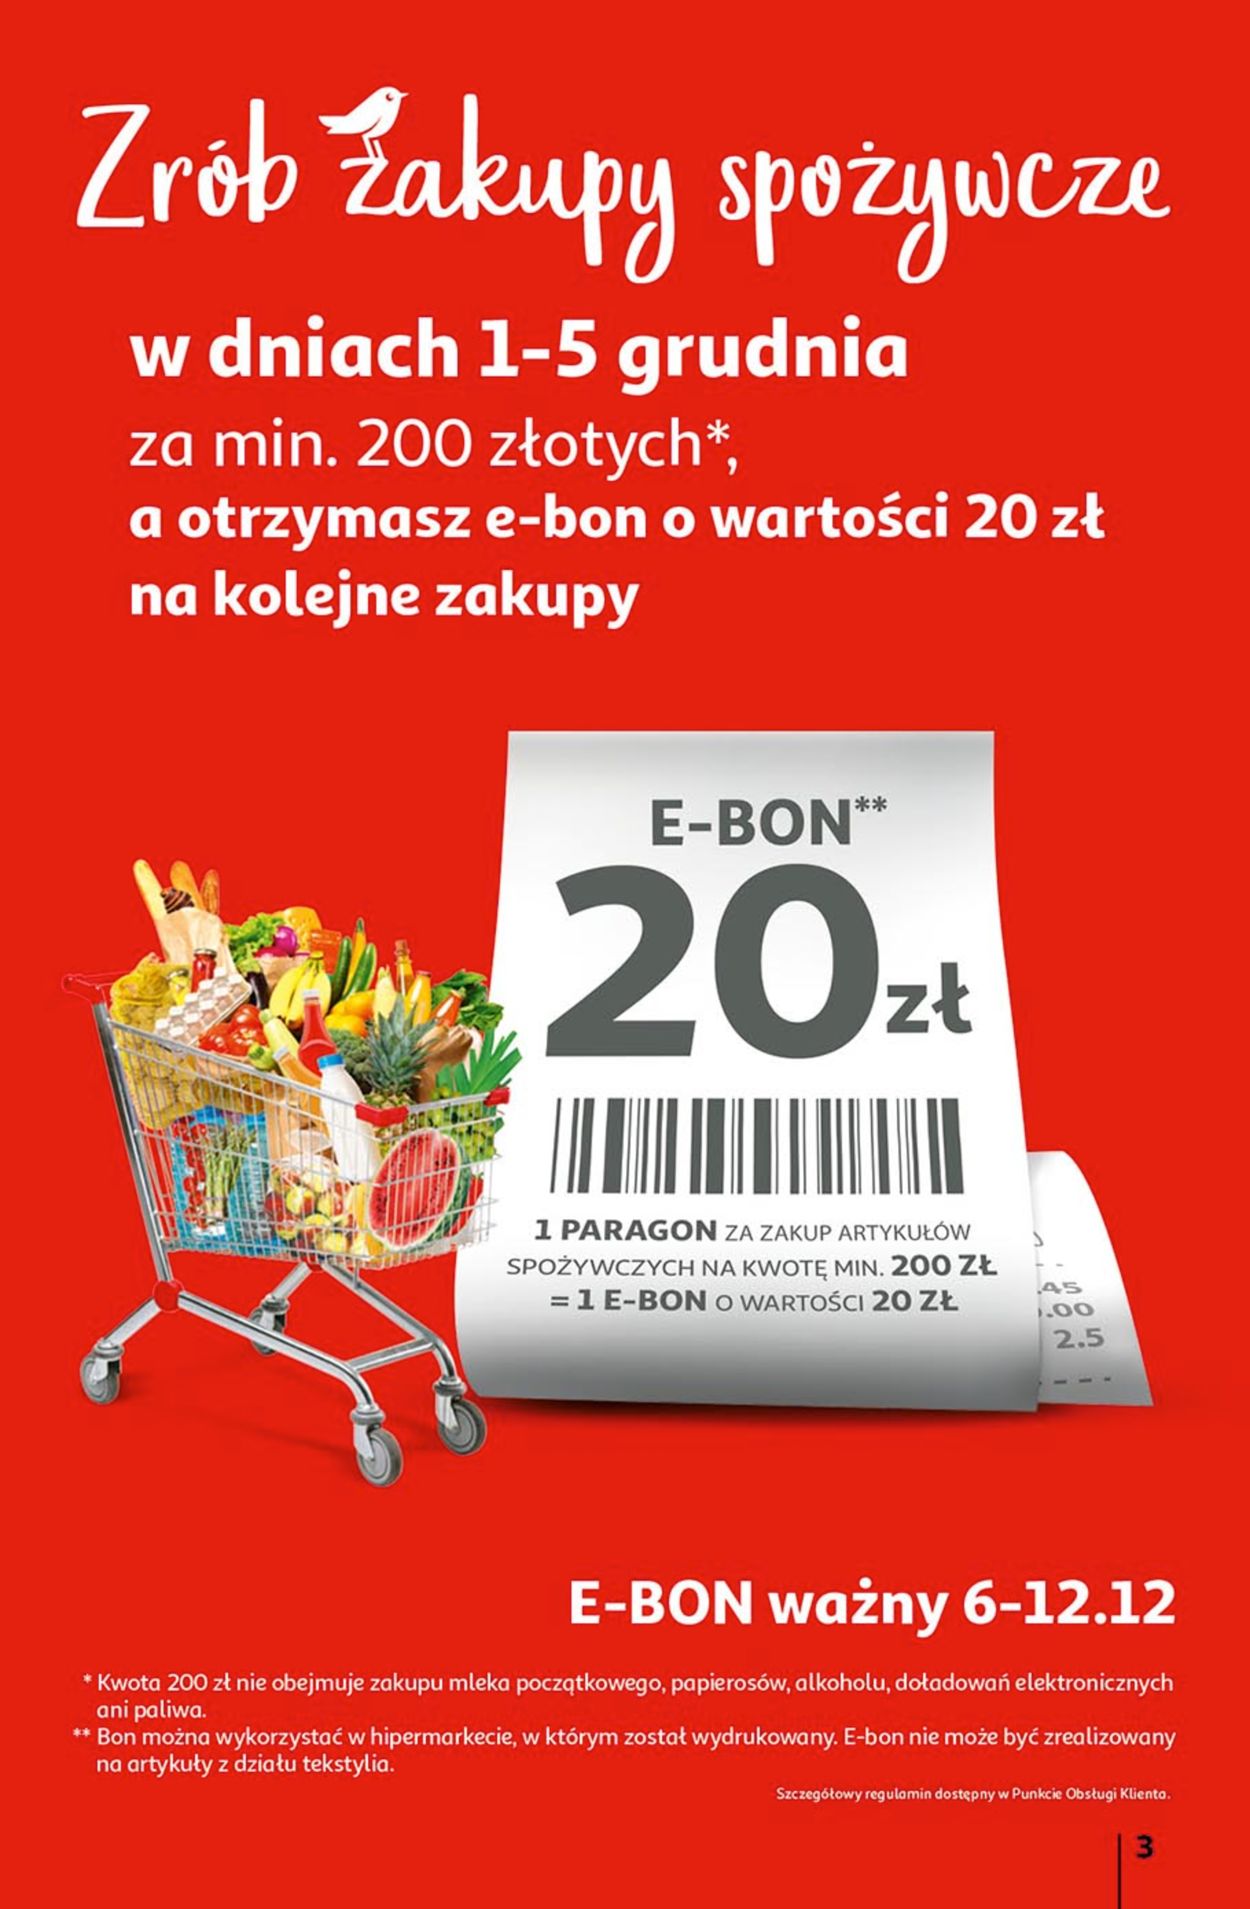 Auchan Gazetka od 02.12.2021